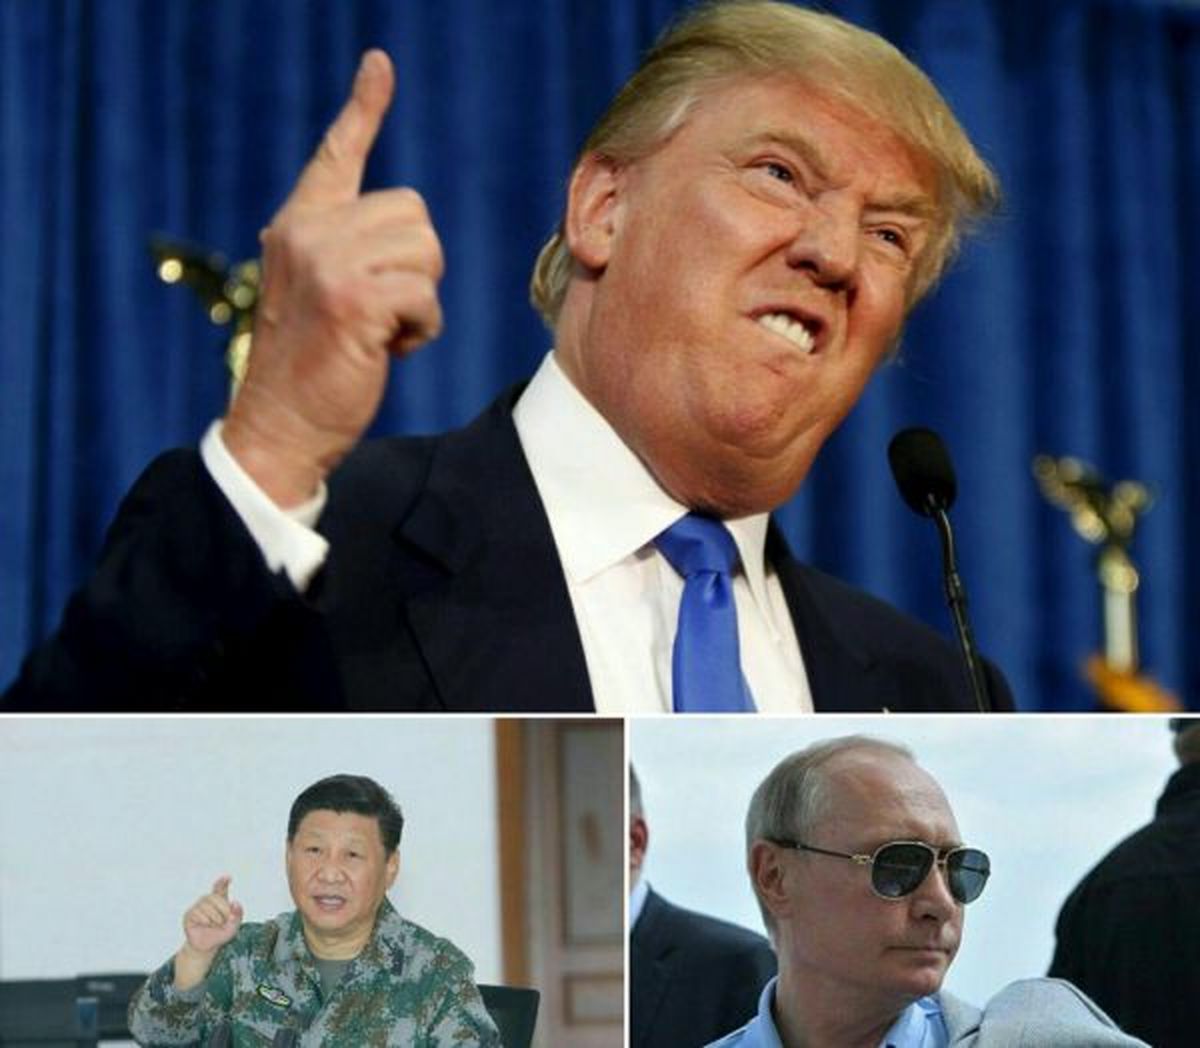 پیش‌بینی آغاز «جنگ جهانی سوم» در سال 2019/پوتین به‌دنبال برپا کردن خیمه امپراطوری‌/توییت‌های ترامپ به جنگ ختم می‌شود؟/سوریه، اتاق پُر از باروت شده است